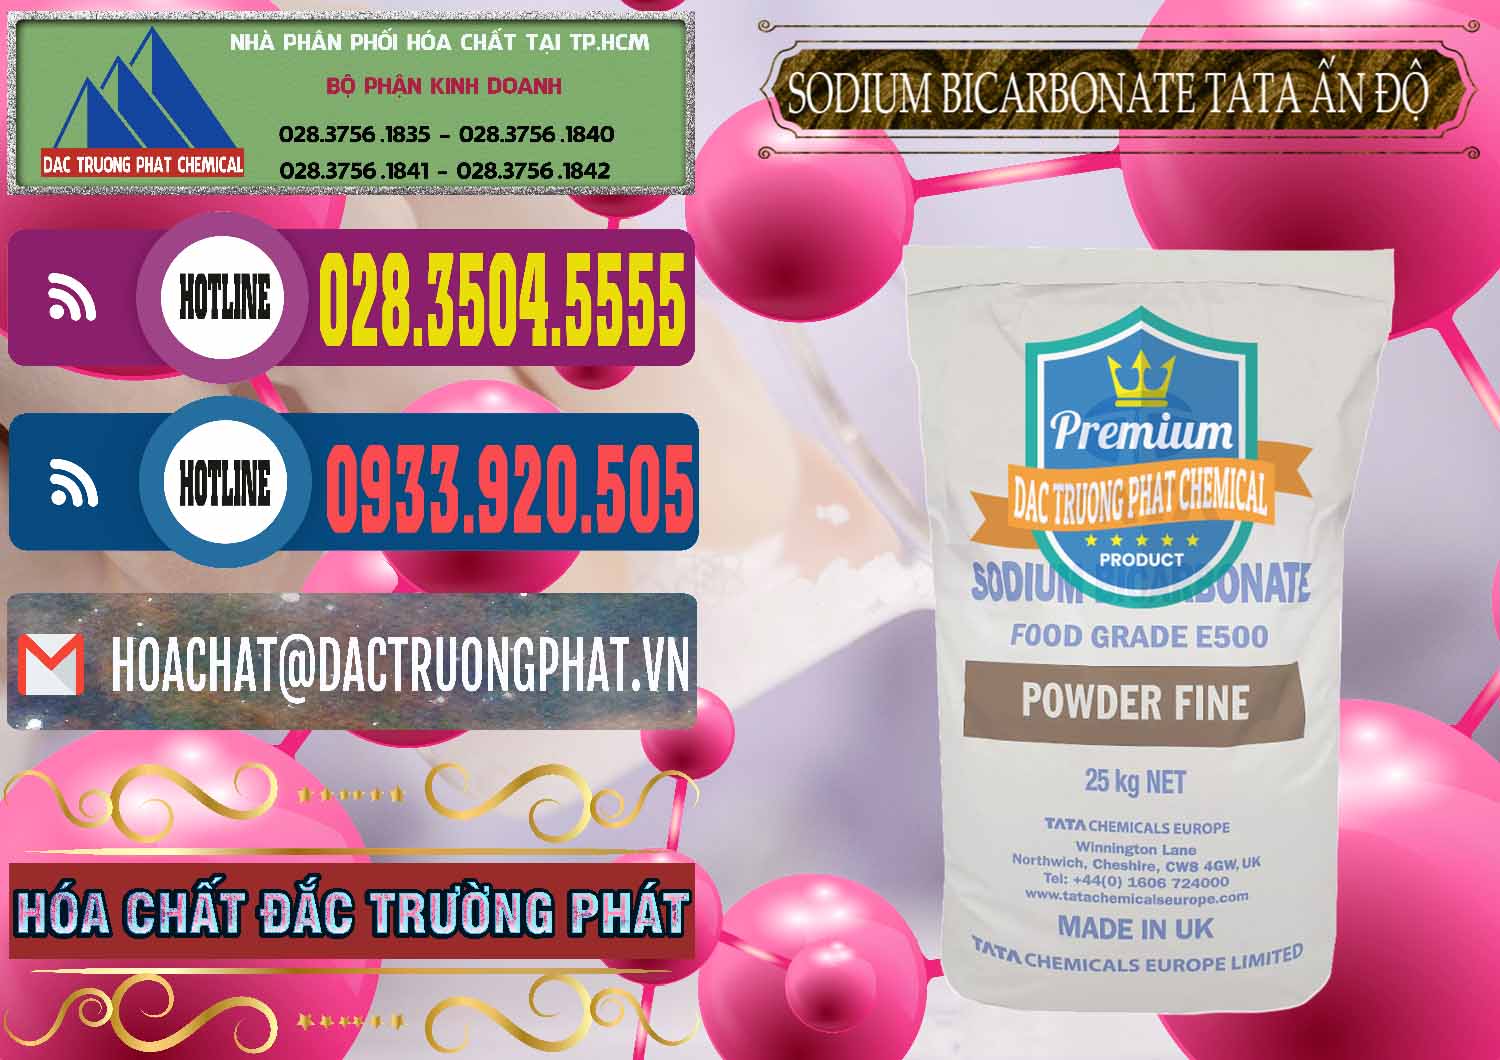 Công ty chuyên kinh doanh và bán Sodium Bicarbonate – Bicar NaHCO3 E500 Thực Phẩm Food Grade Tata Ấn Độ India - 0261 - Phân phối và cung ứng hóa chất tại TP.HCM - muabanhoachat.com.vn